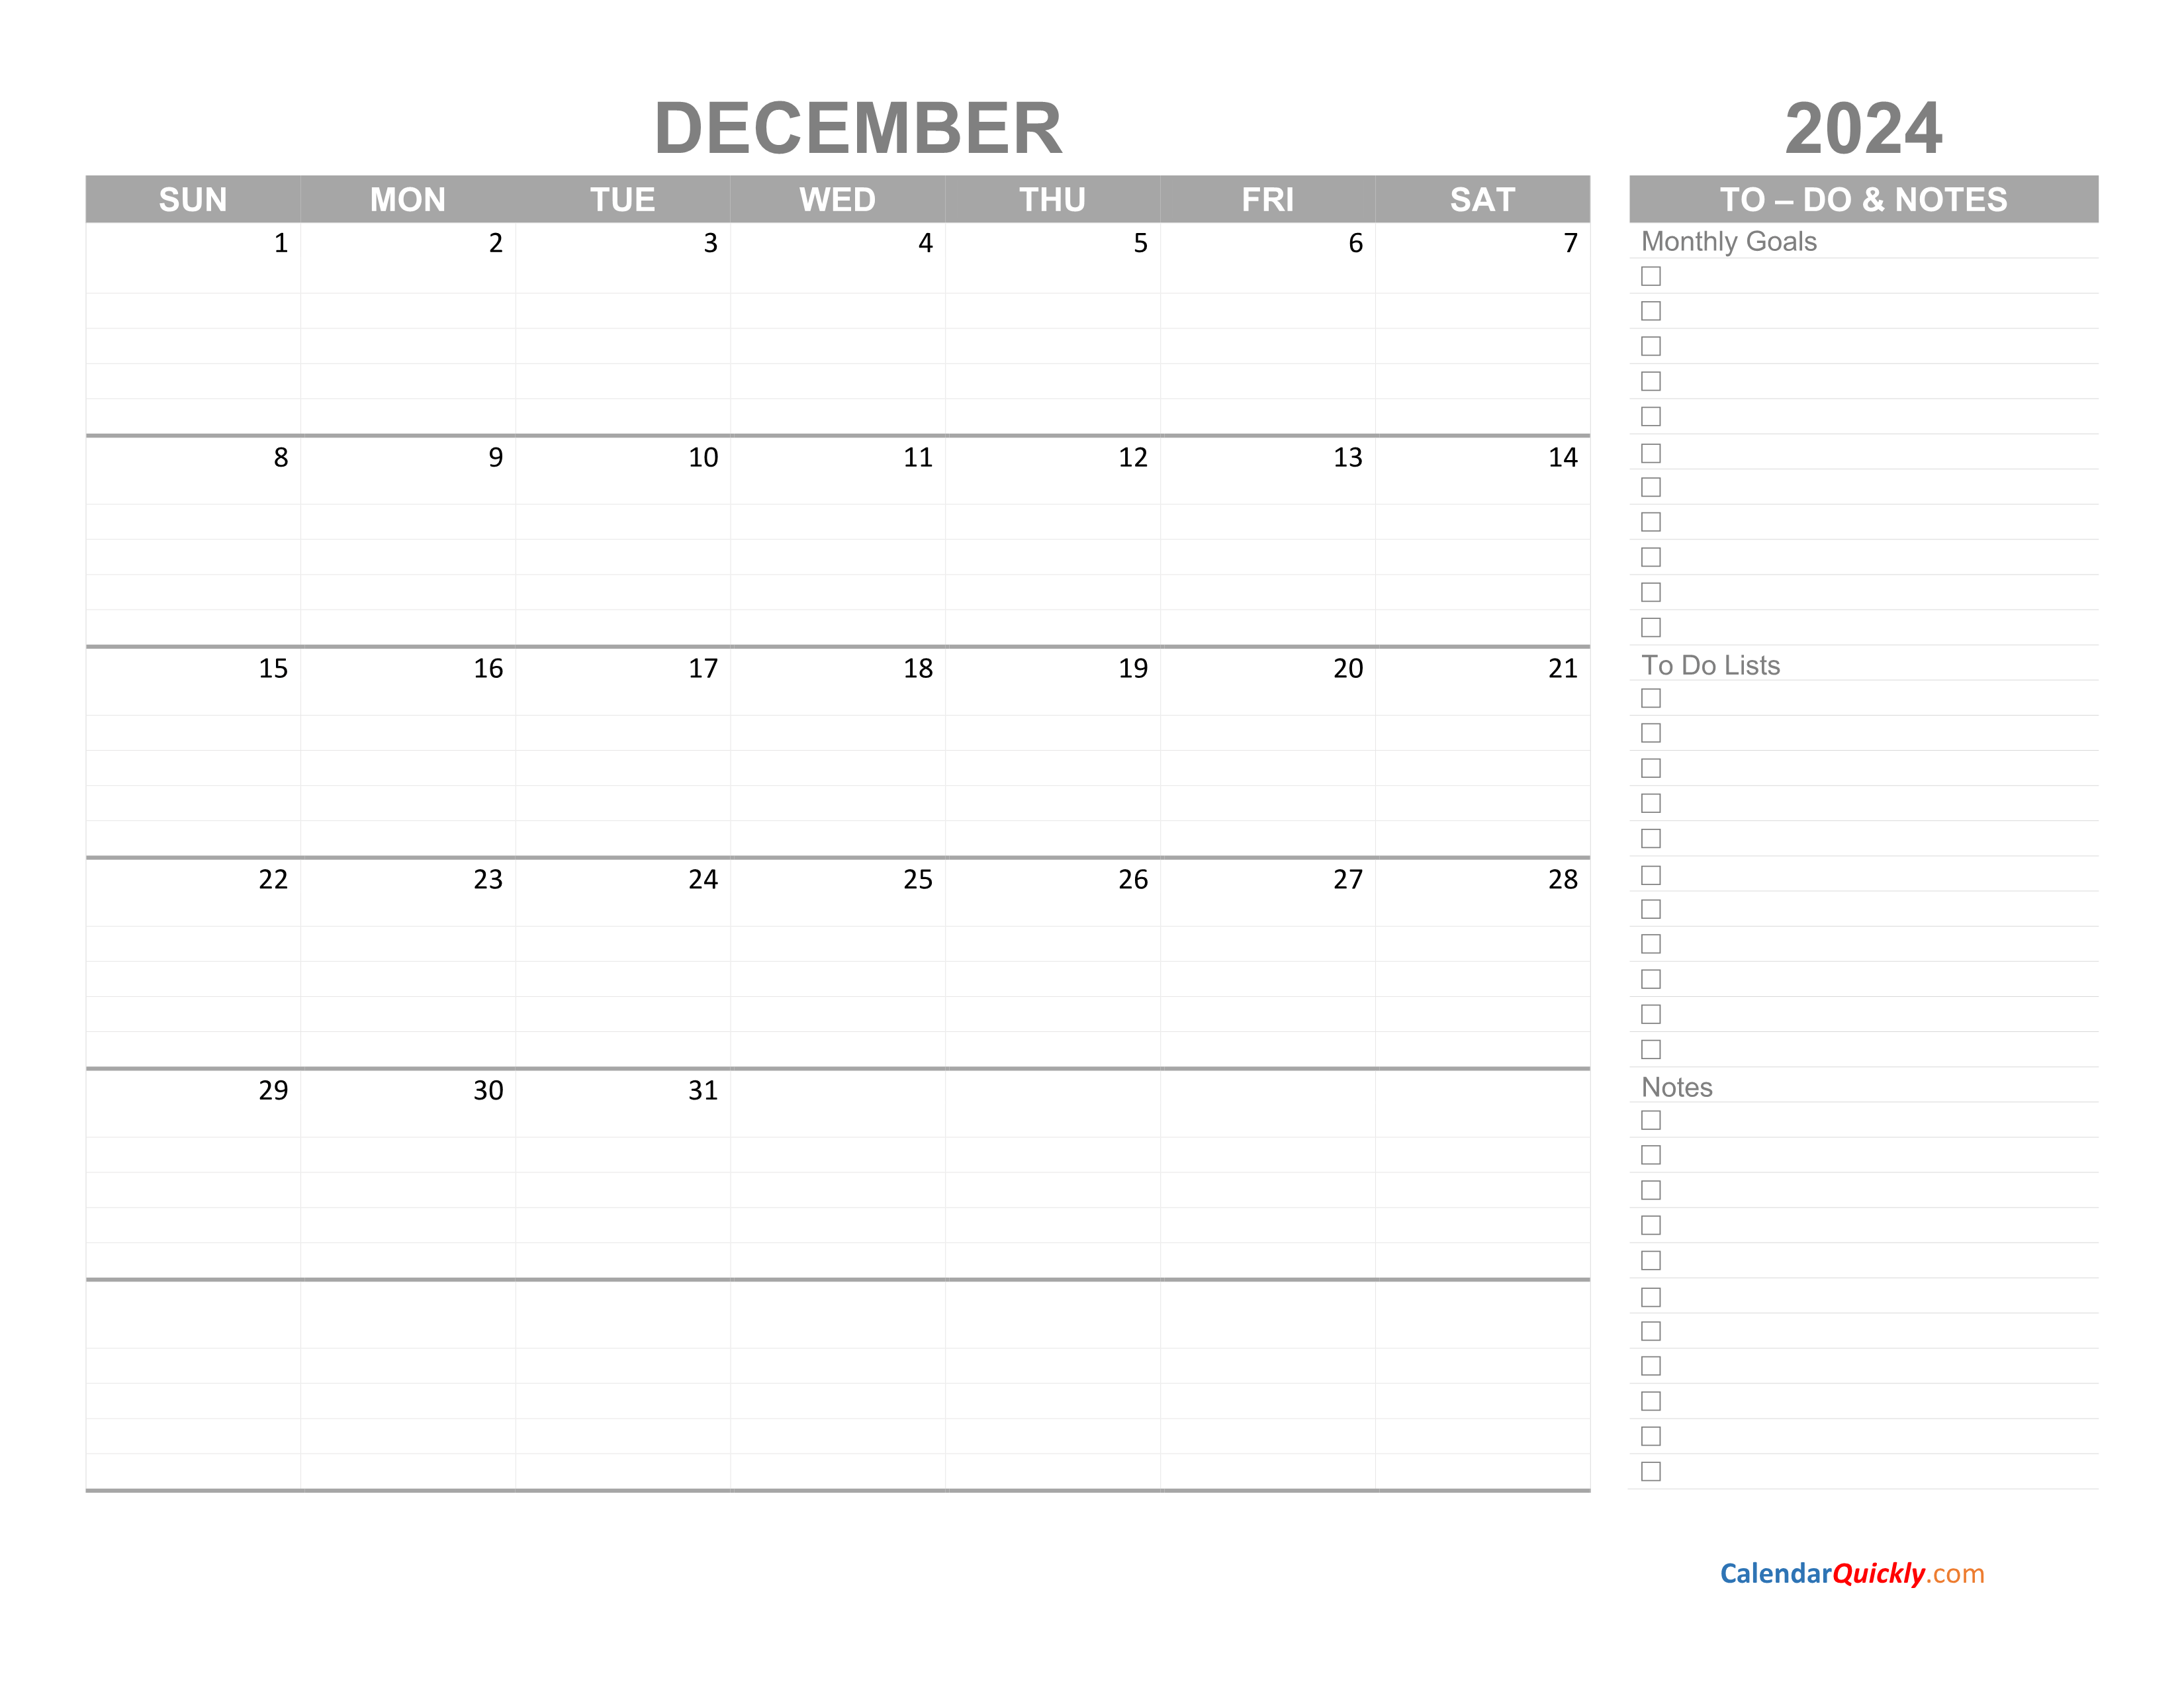 December 2024 Calendar with To Do List Calendar Quickly